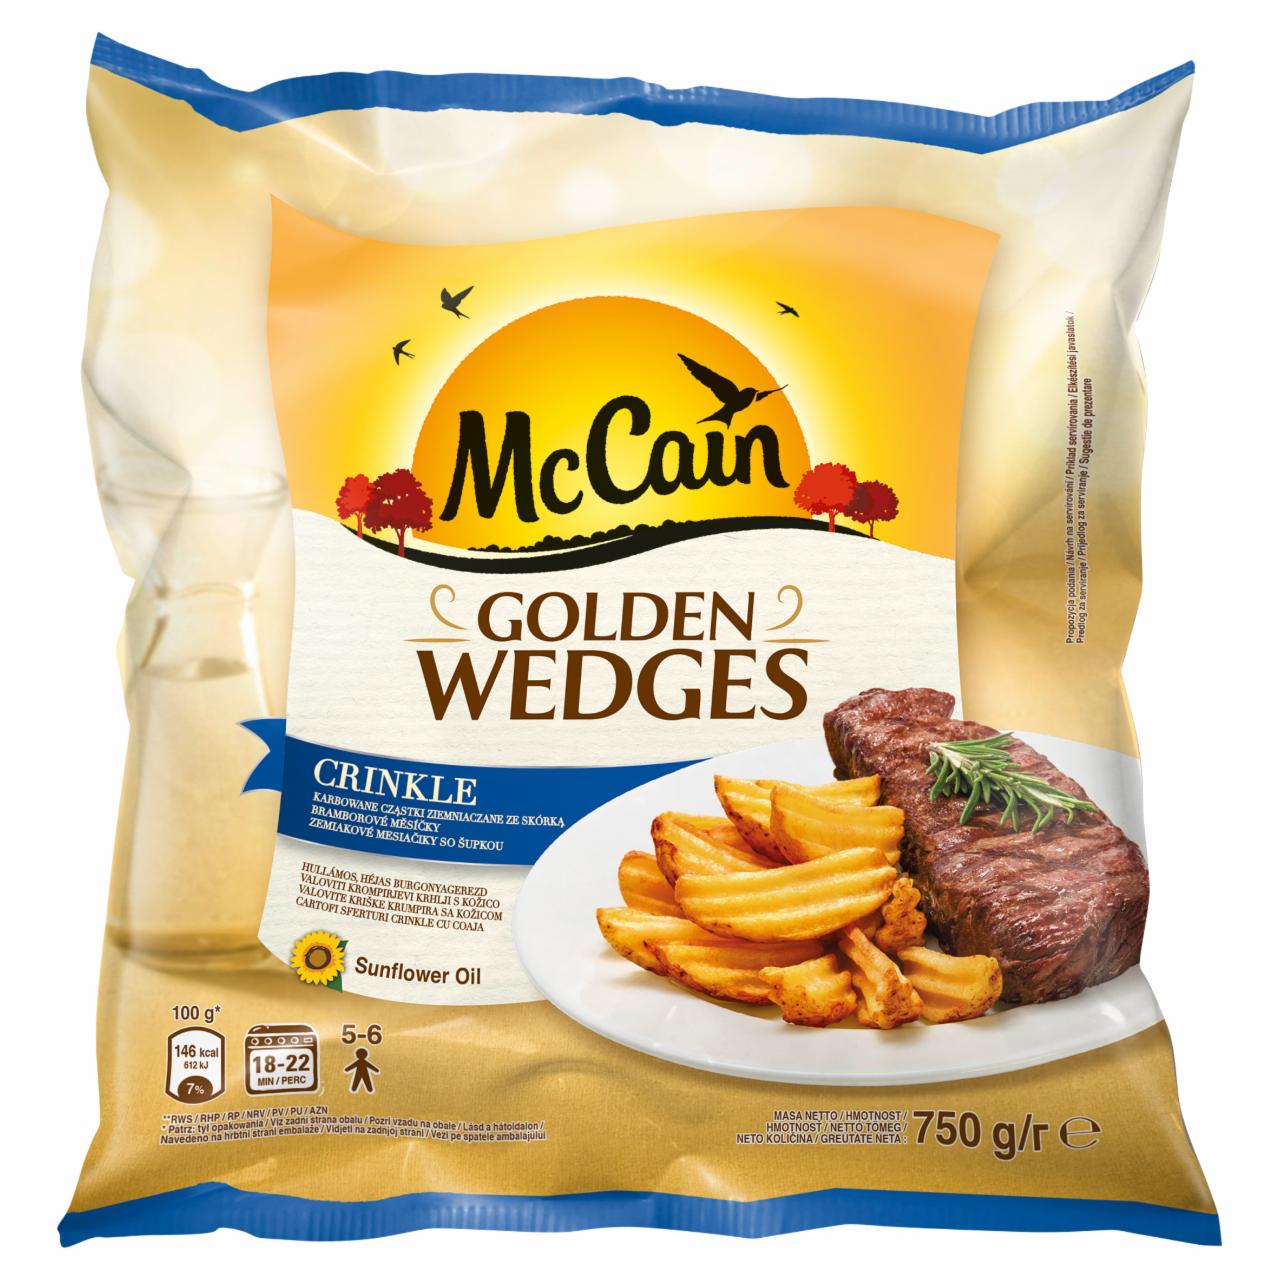 Zdjęcia - McCain Golden Wedges Crinkle Karbowane cząstki ziemniaczane ze skórką 750 g